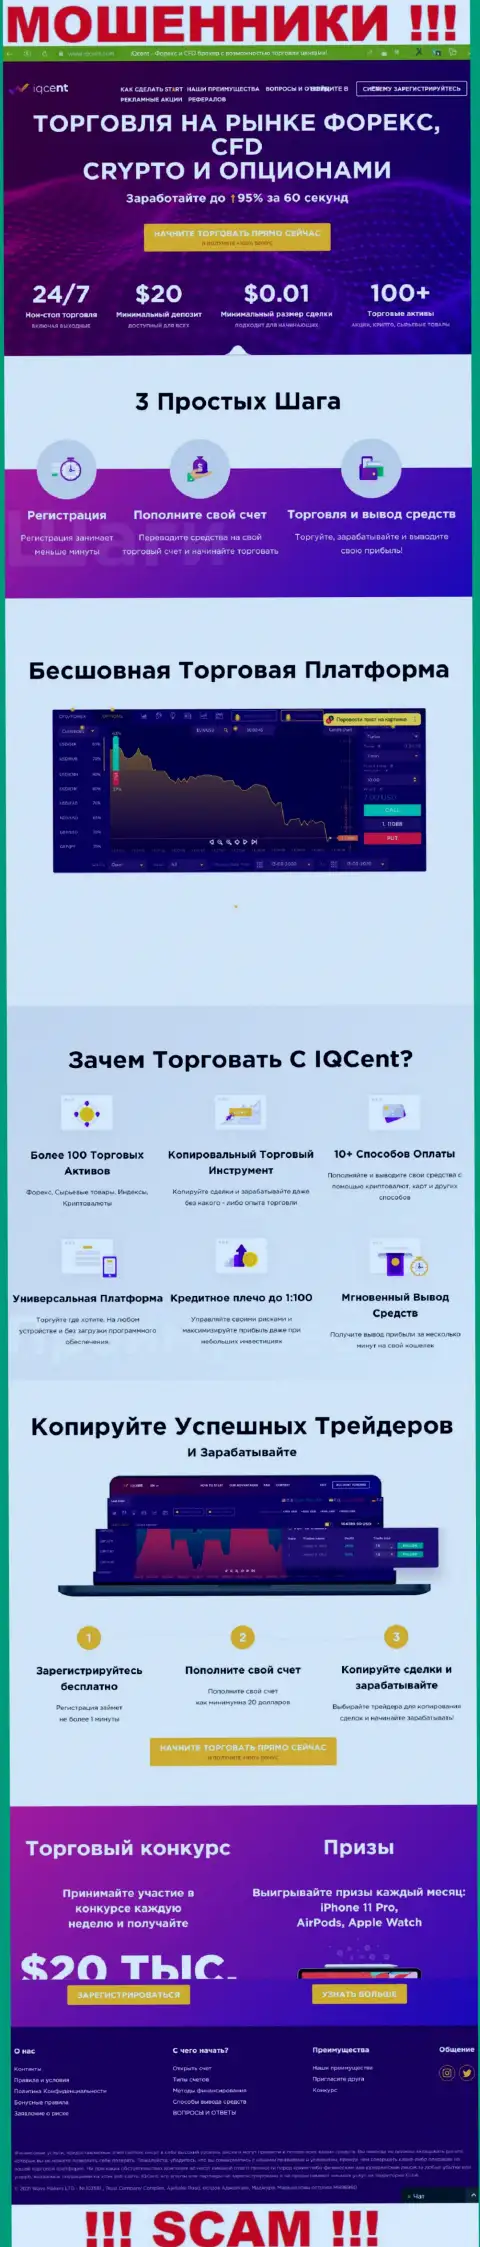 Главный интернет-сервис мошенников Ваве Маркетс ЛТД, заполненный инфой для лохов